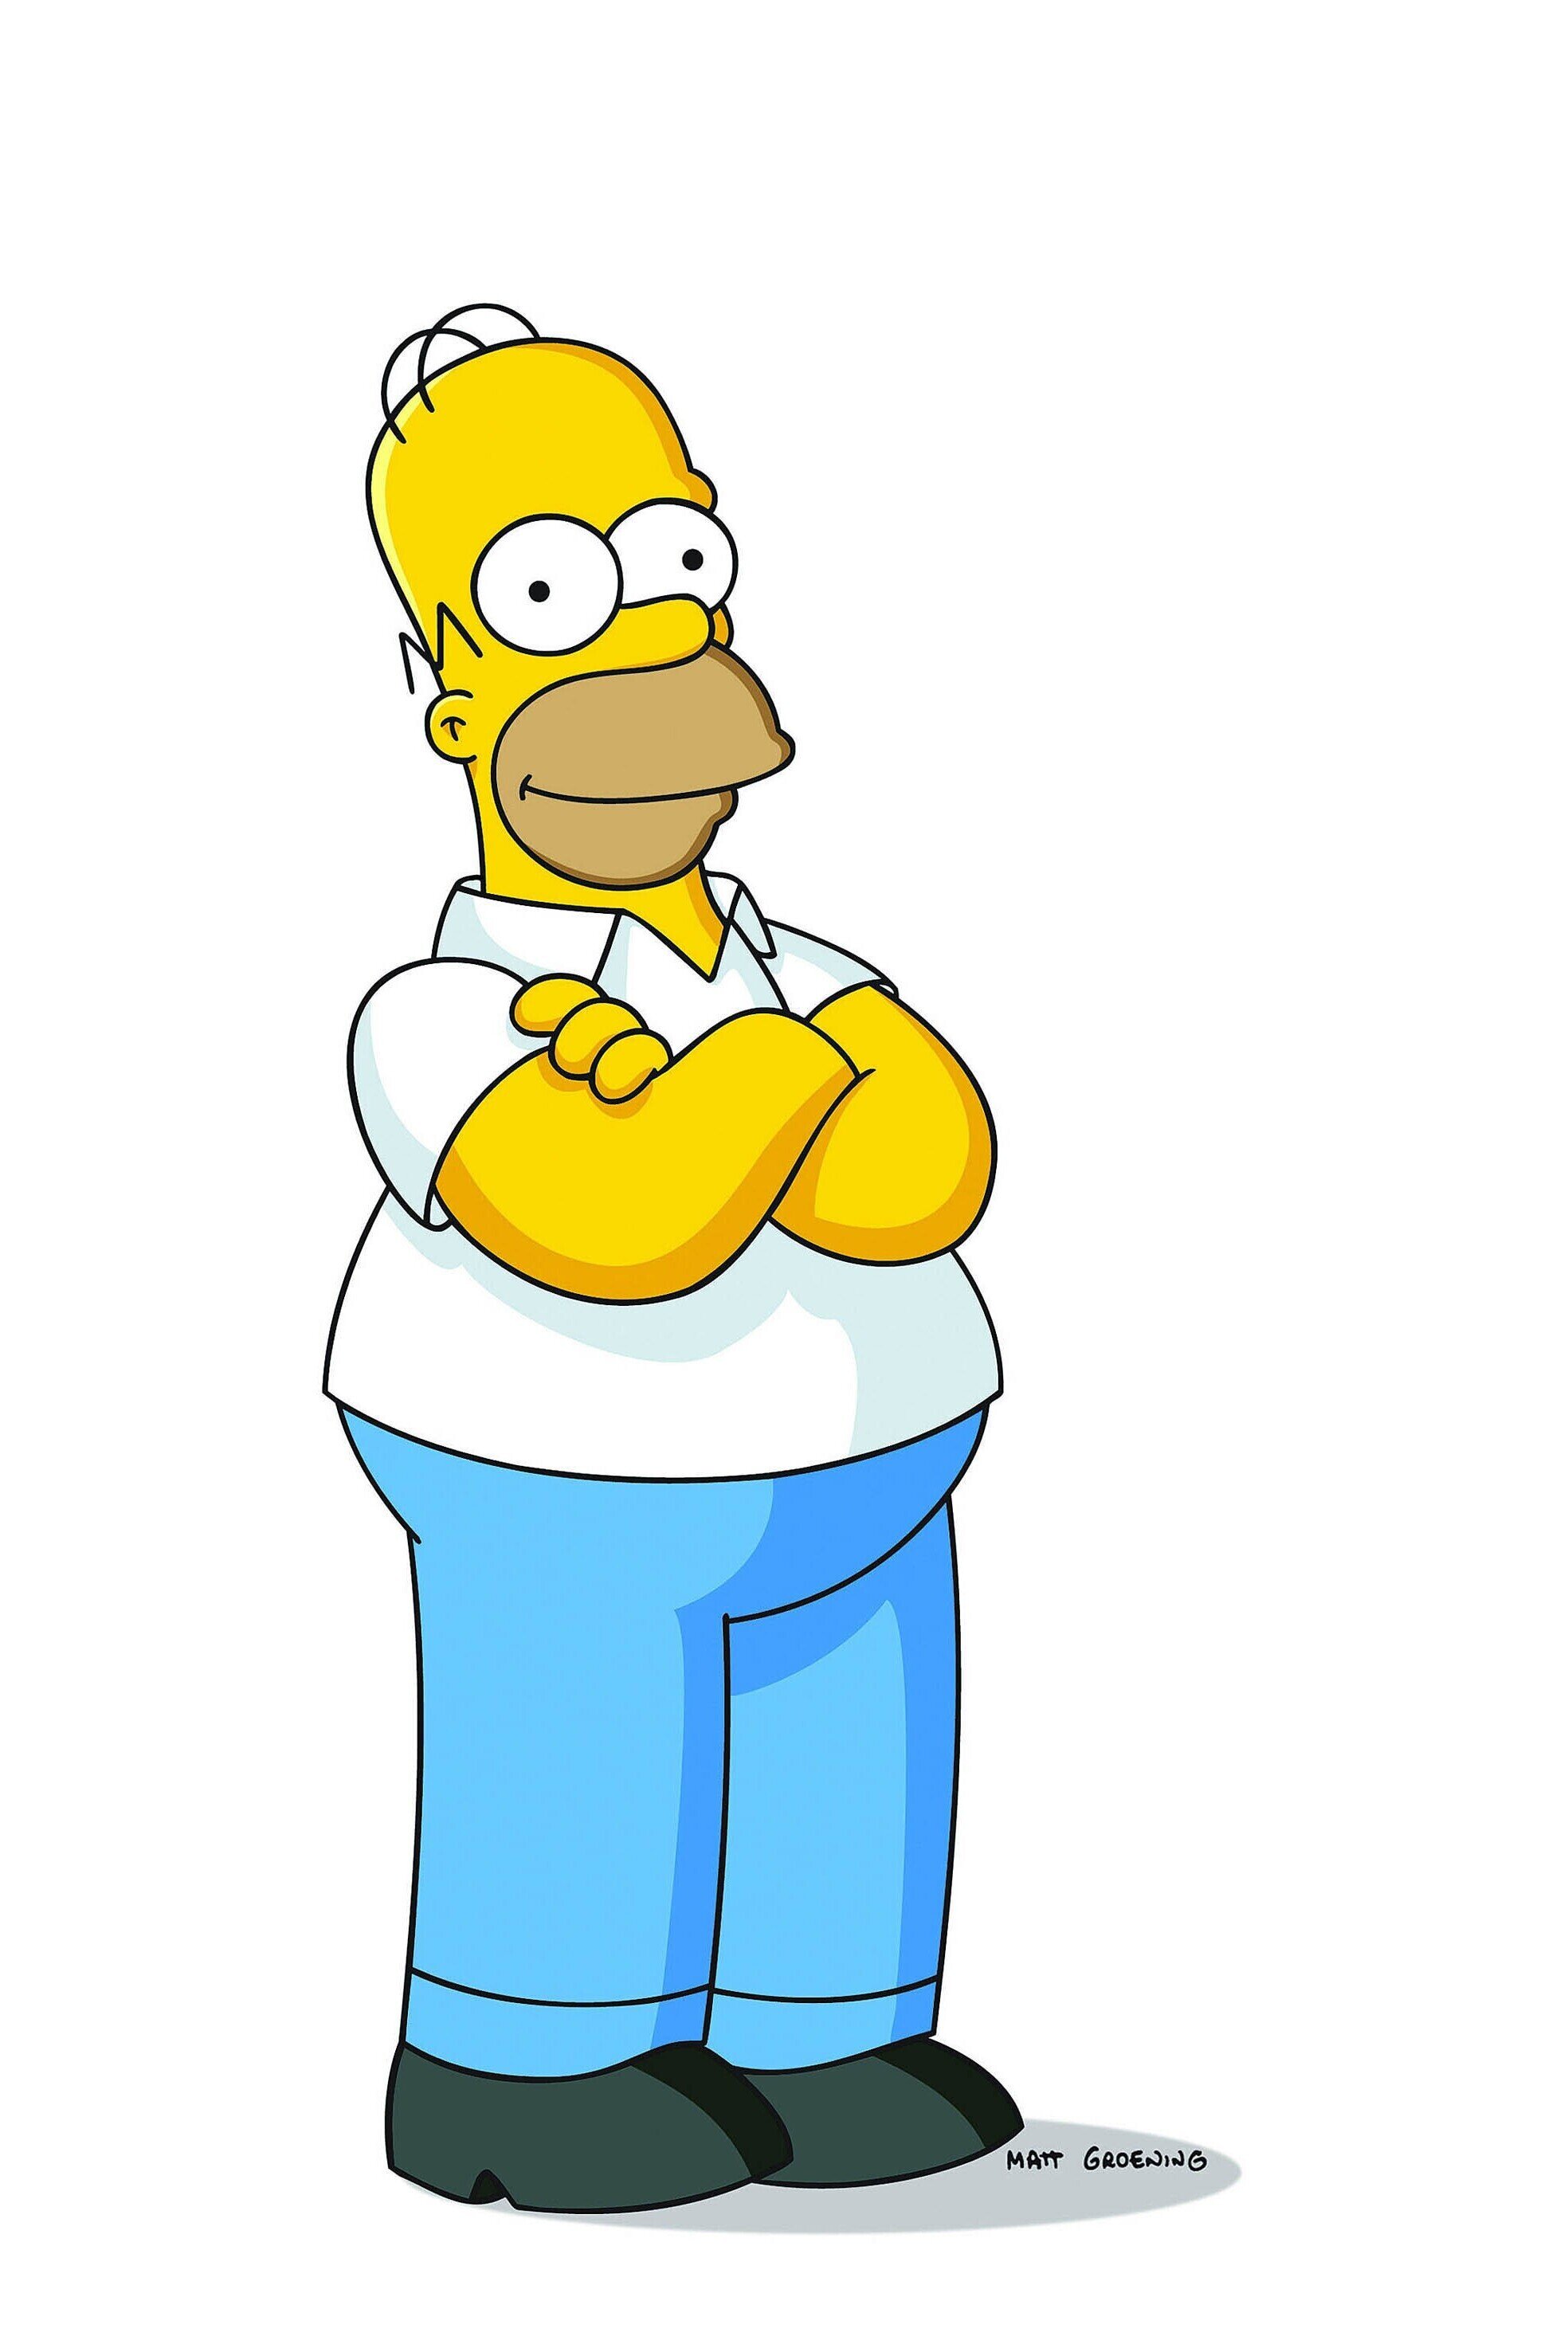 Les Simpson - Info sans gros mot